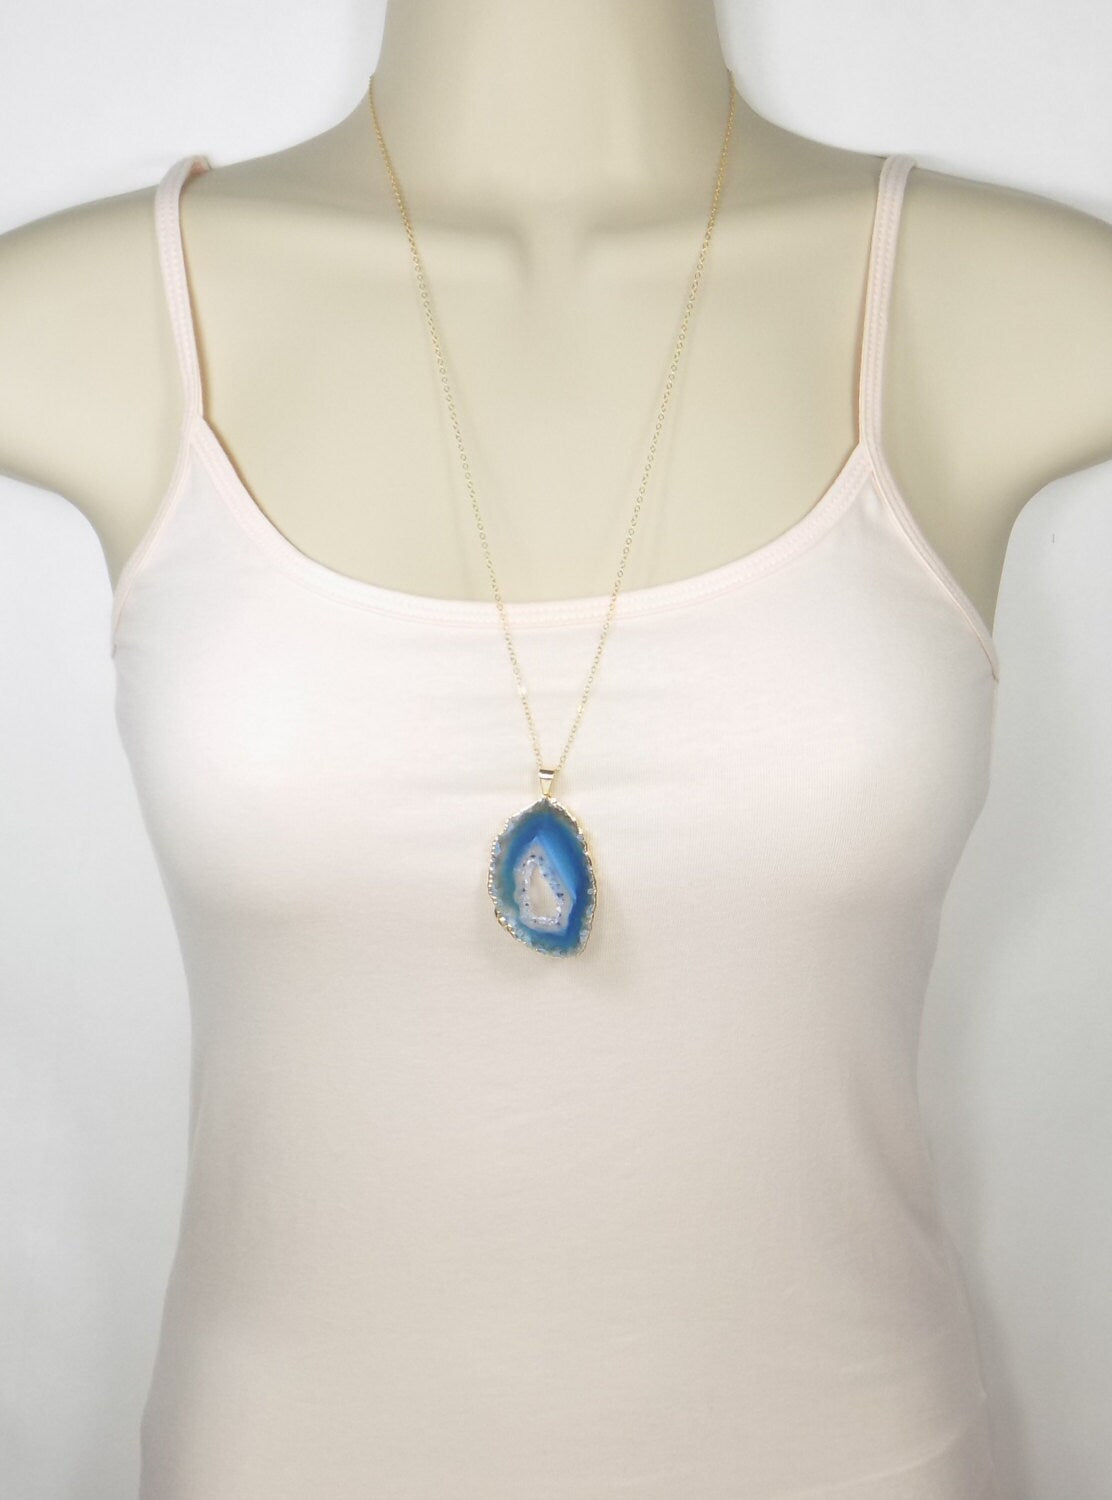 Unique Agate Necklace - Personalized Blue Druzy Necklace